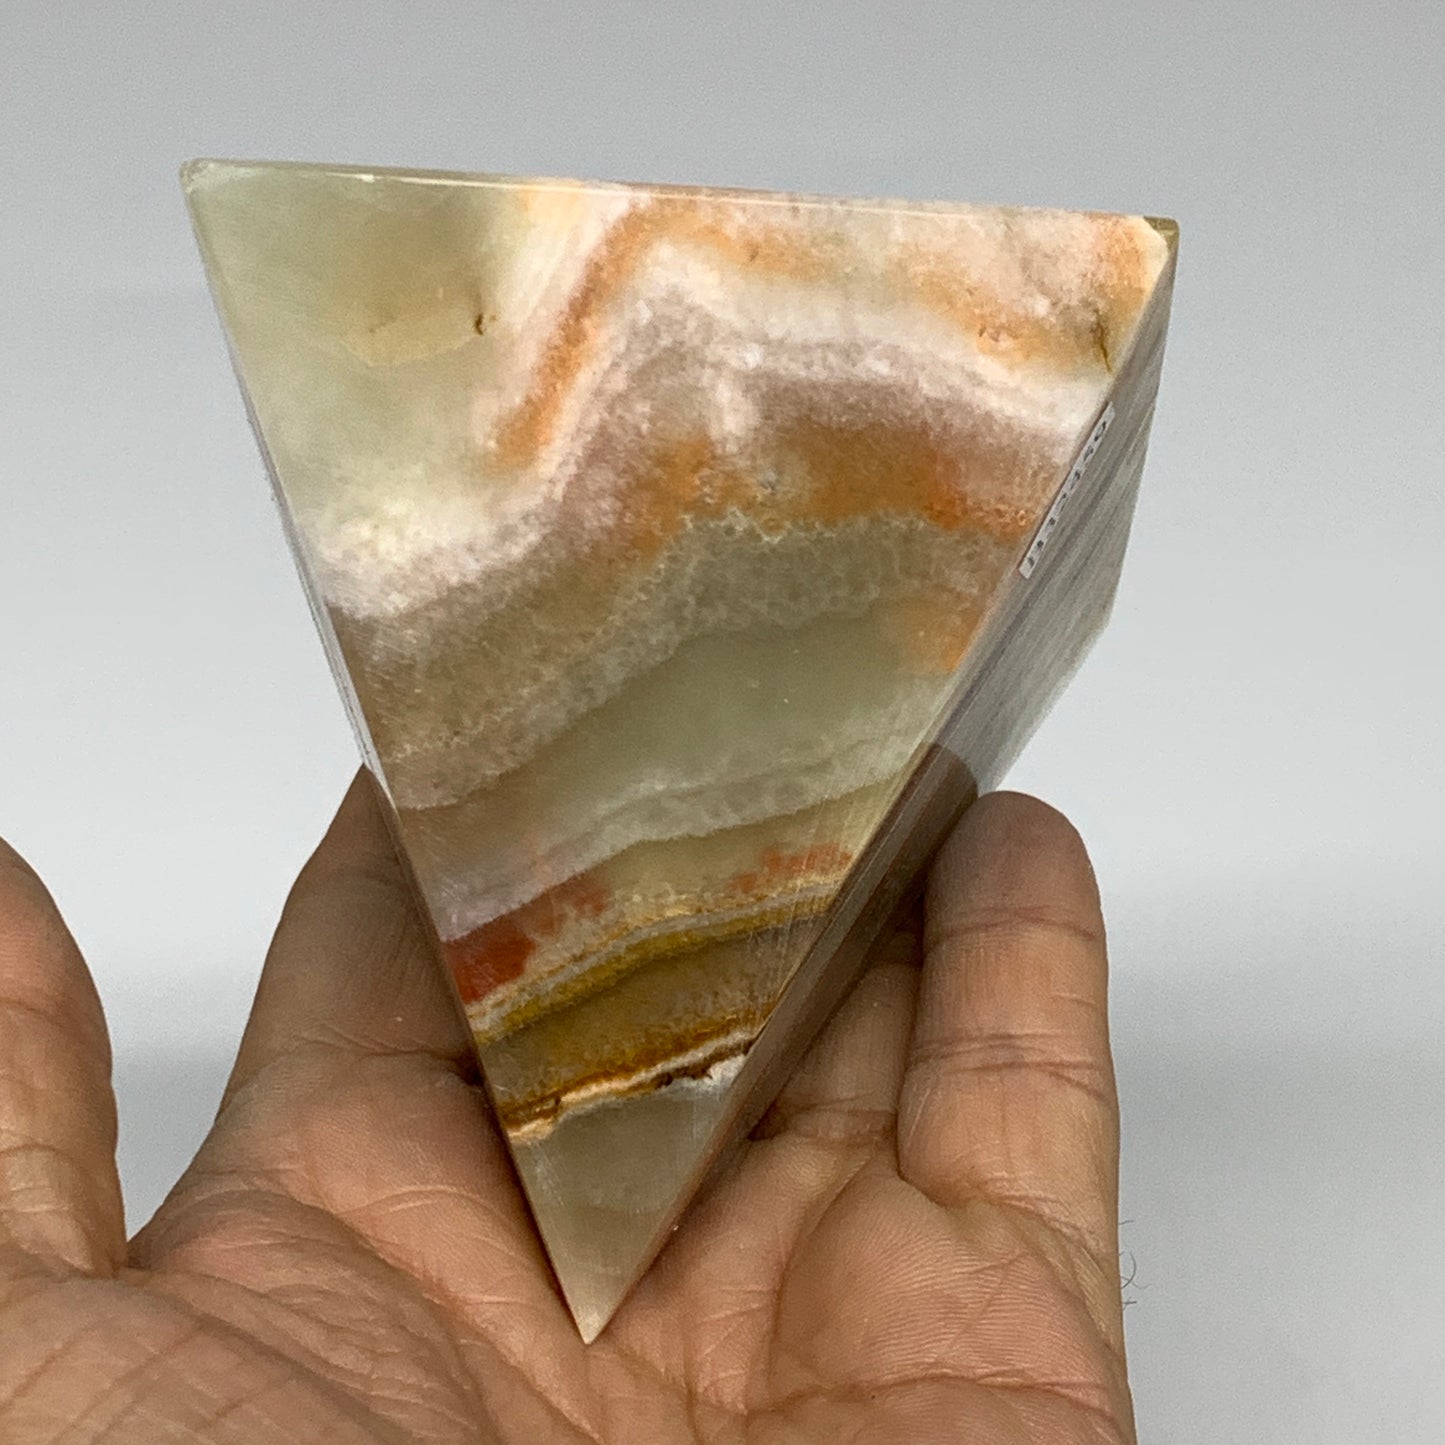 0.89 lbs, 3"x2.9"x2.9", Green Onyx Pyramid Gemstone Crystal, B32459